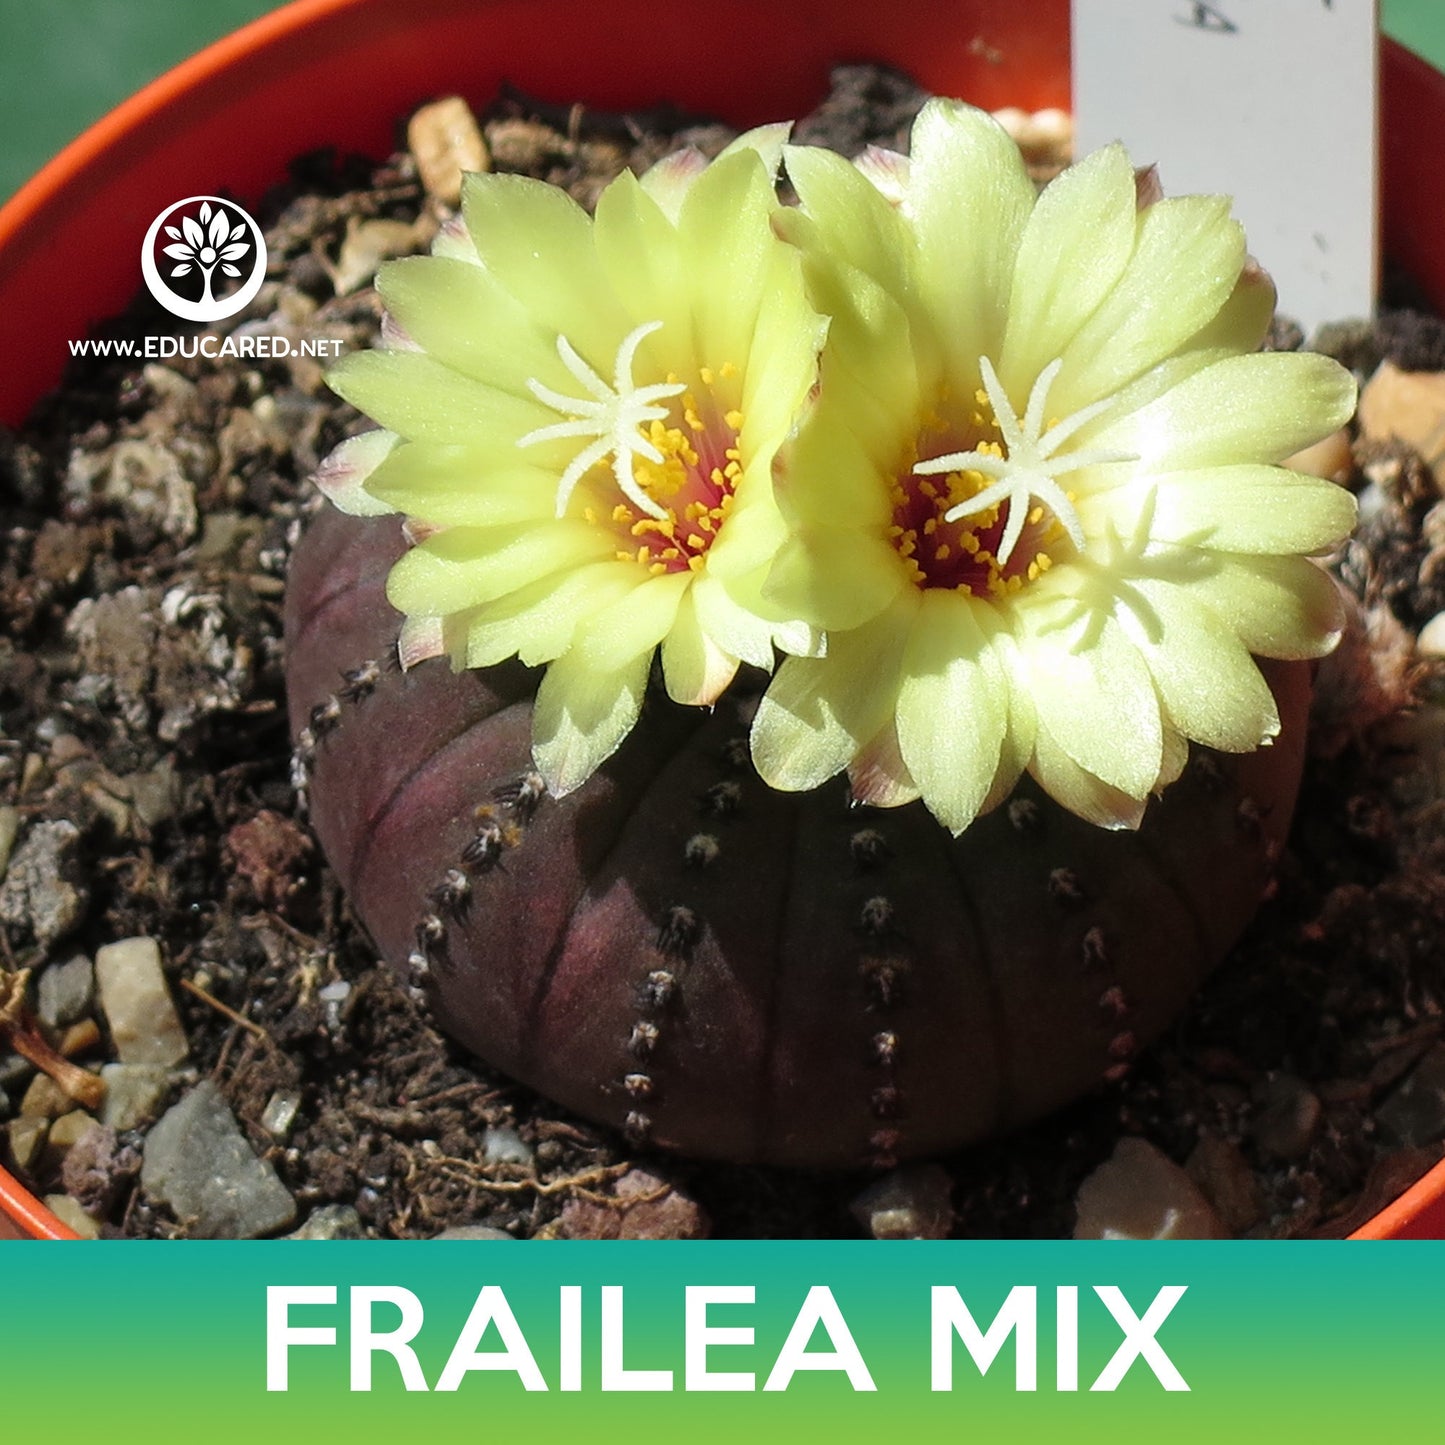 Frailea Cactus Mix Seeds